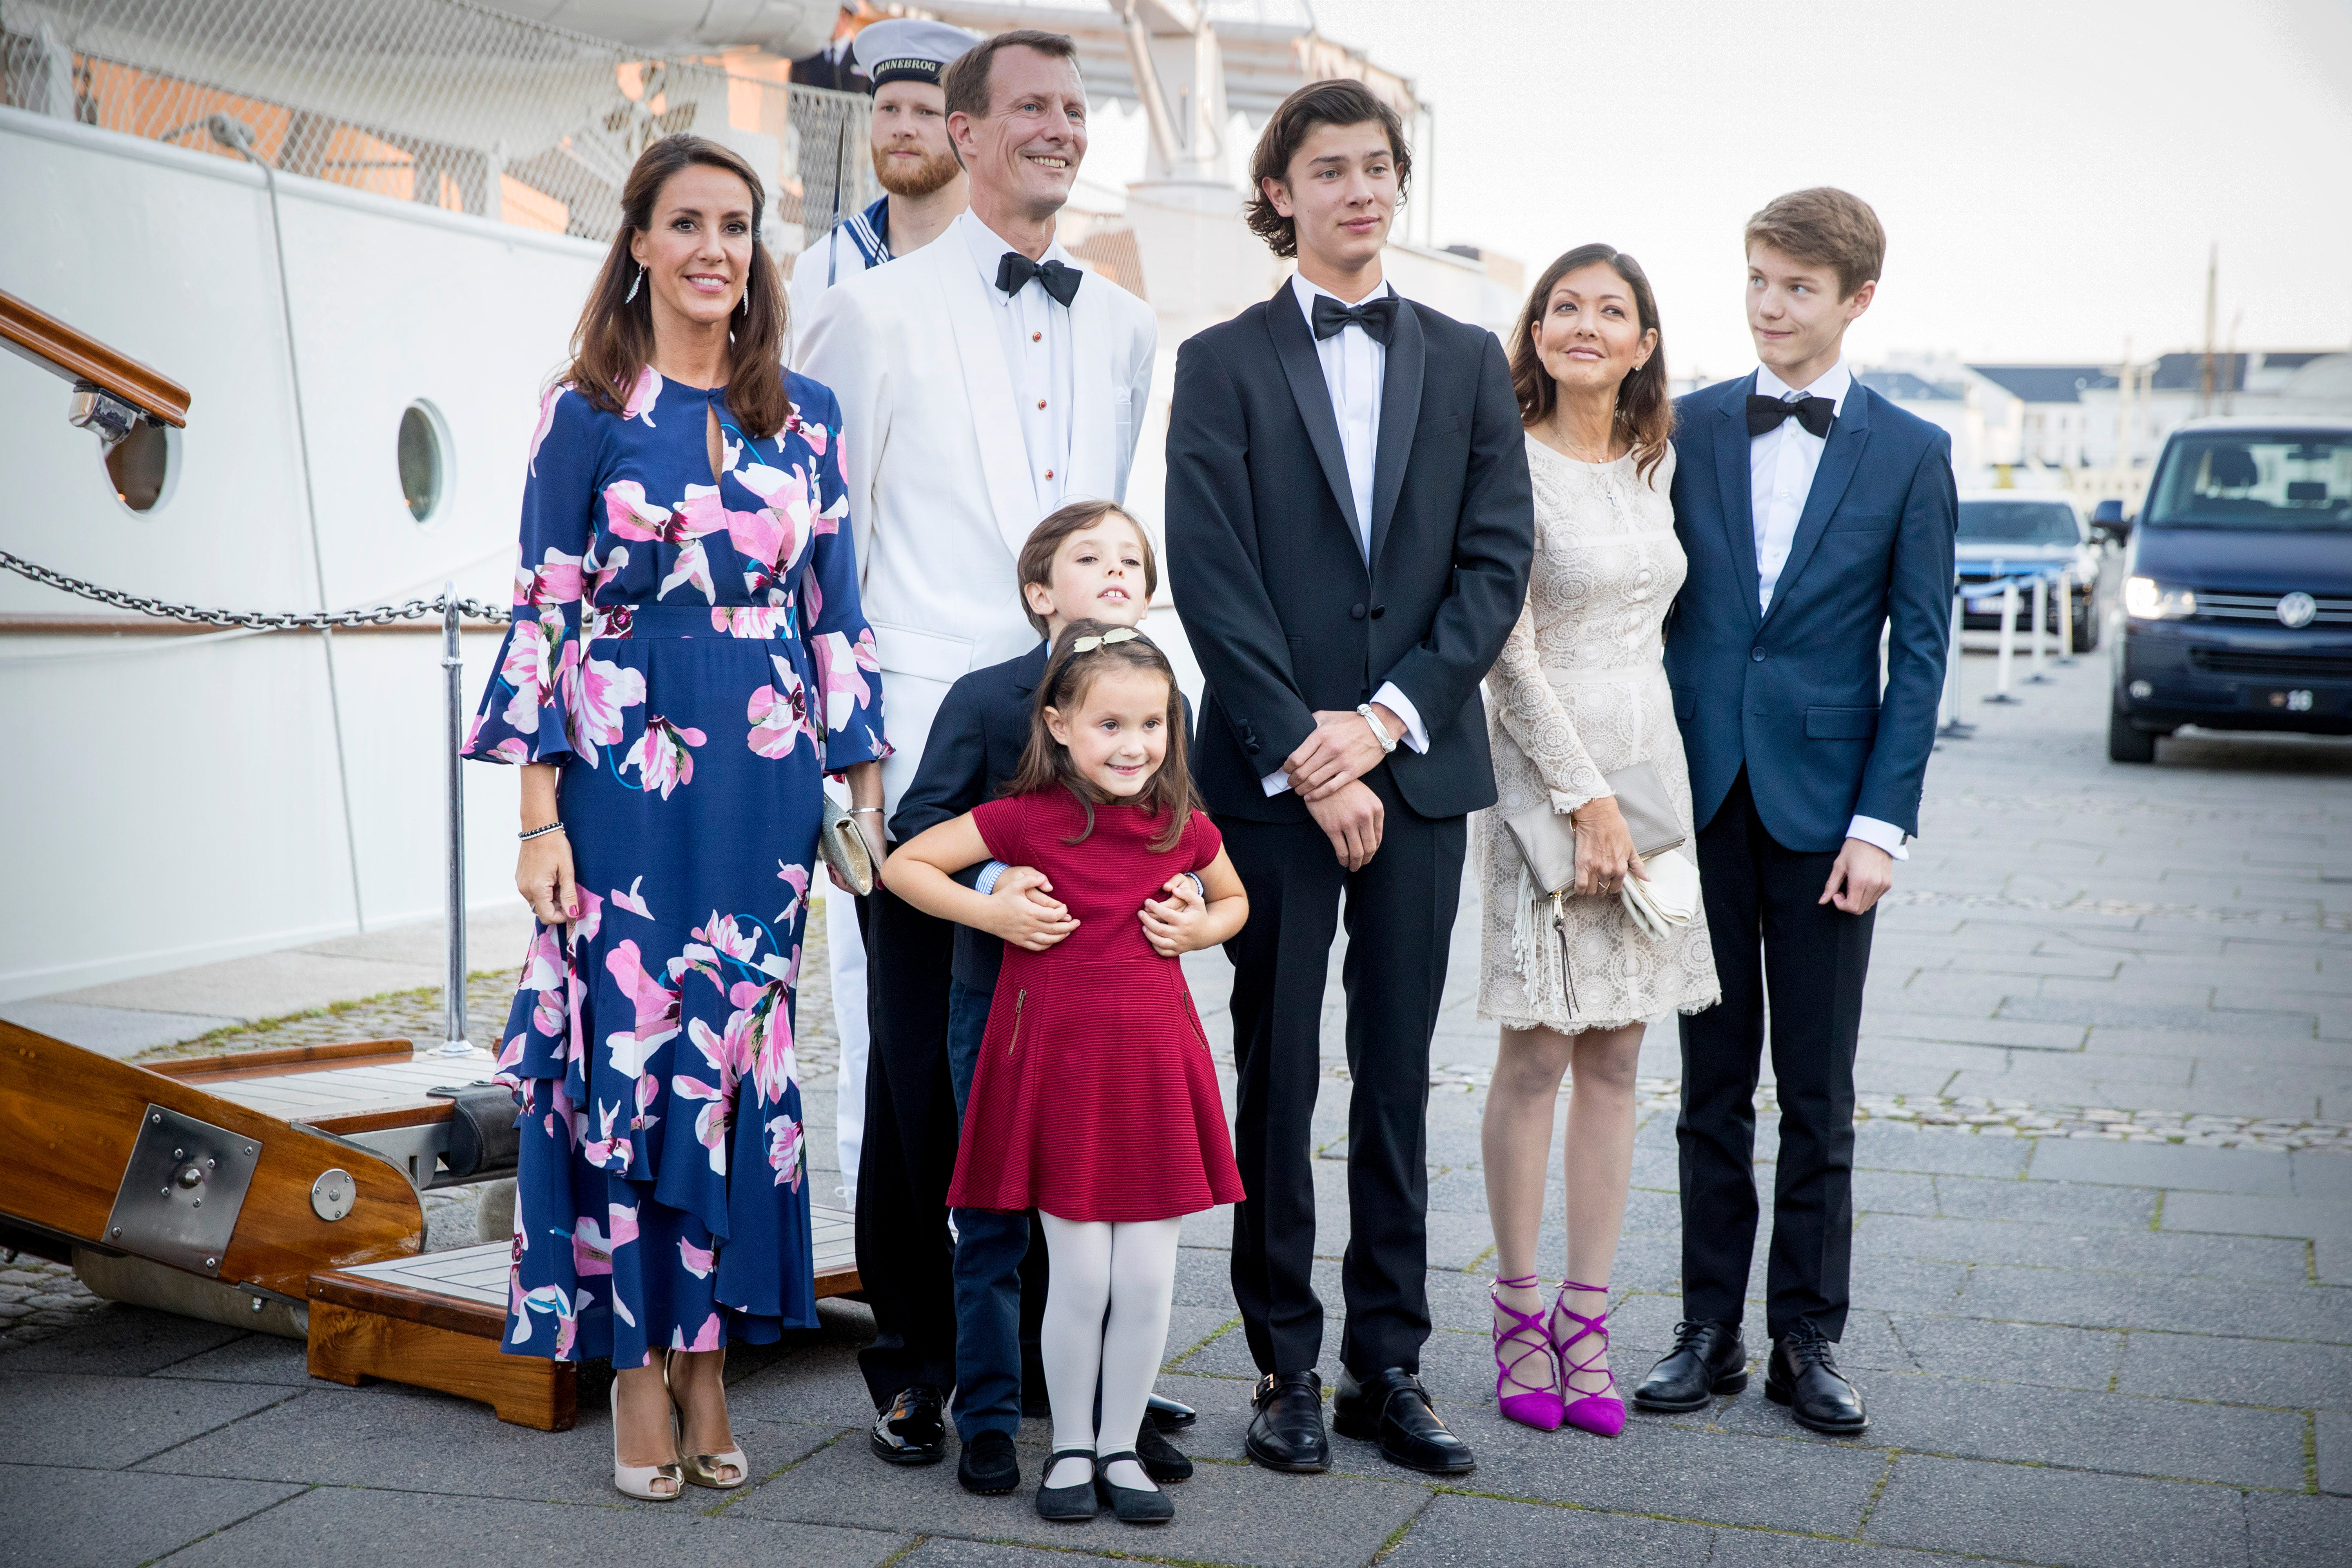 Prinzessin Marie von Dänemark, Prinz Joachim von Dänemark, Prinz Henrik von Dänemark, Prinzessin Athene von Dänemark, Prinz Nikolai von Dänemark, Gräfin Alexandra von Dänemark und Prinz Felix von Dänemark im August 2017